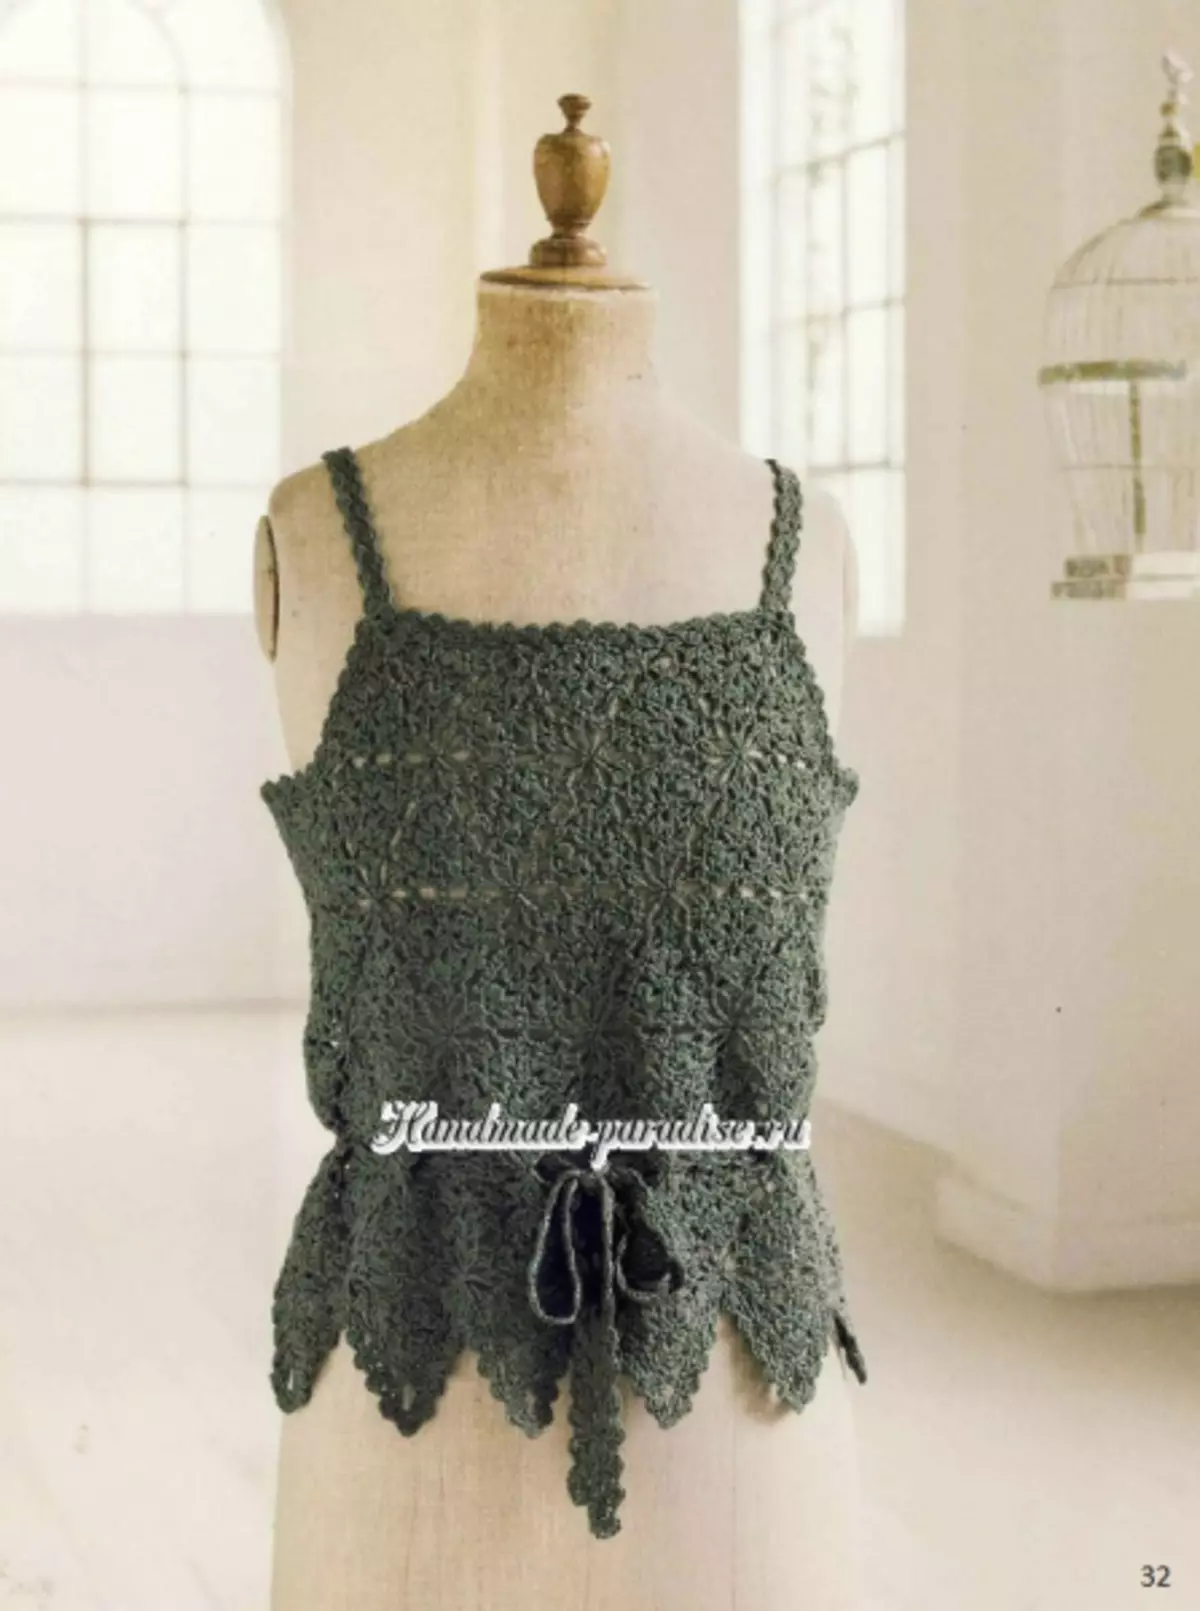 ಅಲಂಕಾರಿಕ crochet. ಜಪಾನೀಸ್ ನಿಯತಕಾಲಿಕೆ